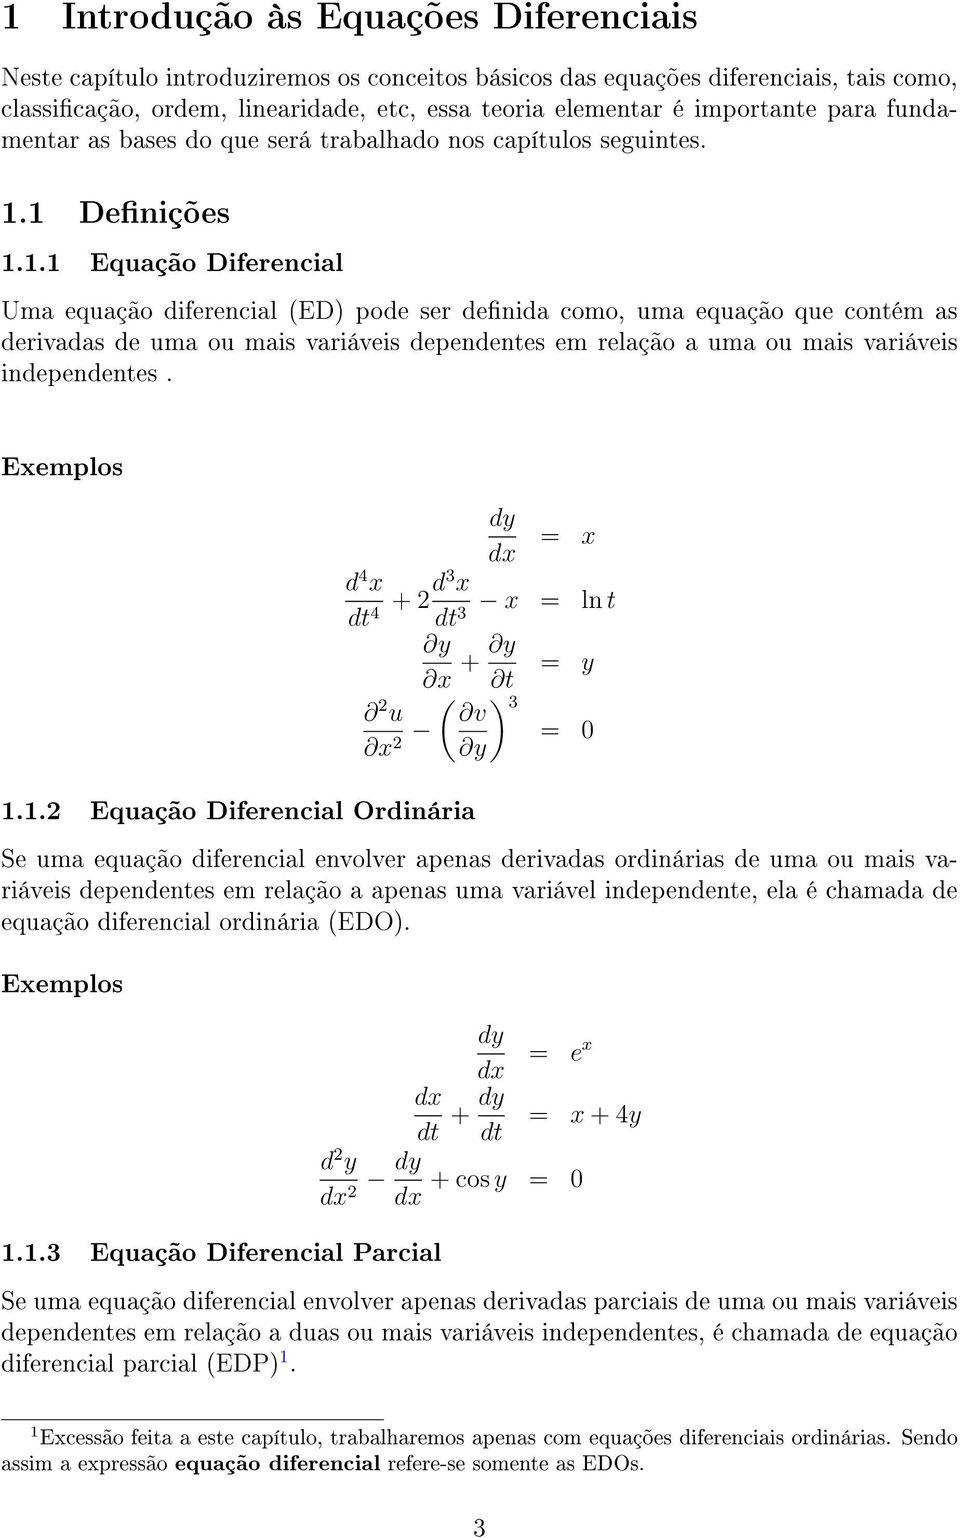 1 Denições 1.1.1 Equação Diferencial Uma equação diferencial (ED) pode ser denida como, uma equação que contém as derivadas de uma ou mais variáveis dependentes em relação a uma ou mais variáveis independentes.